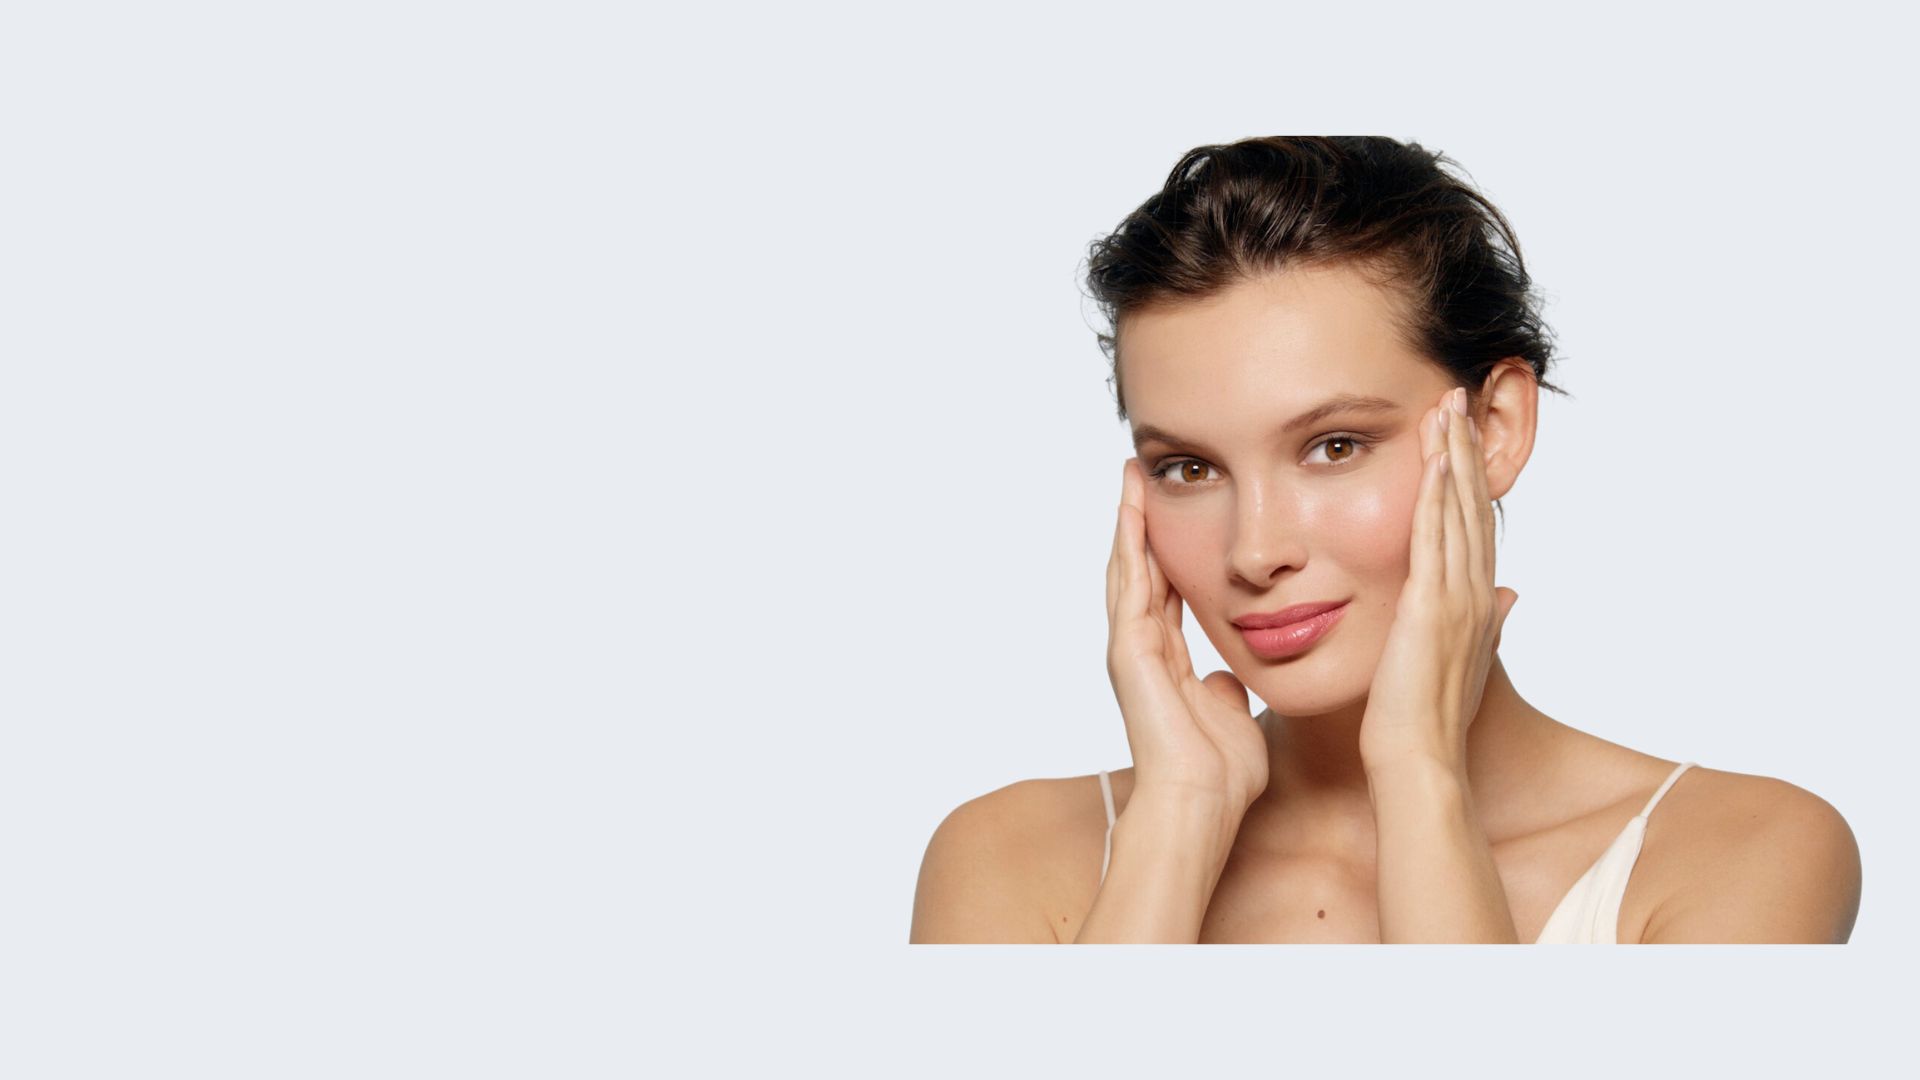 Démaquillage : nos conseils pour bien nettoyer son visage 